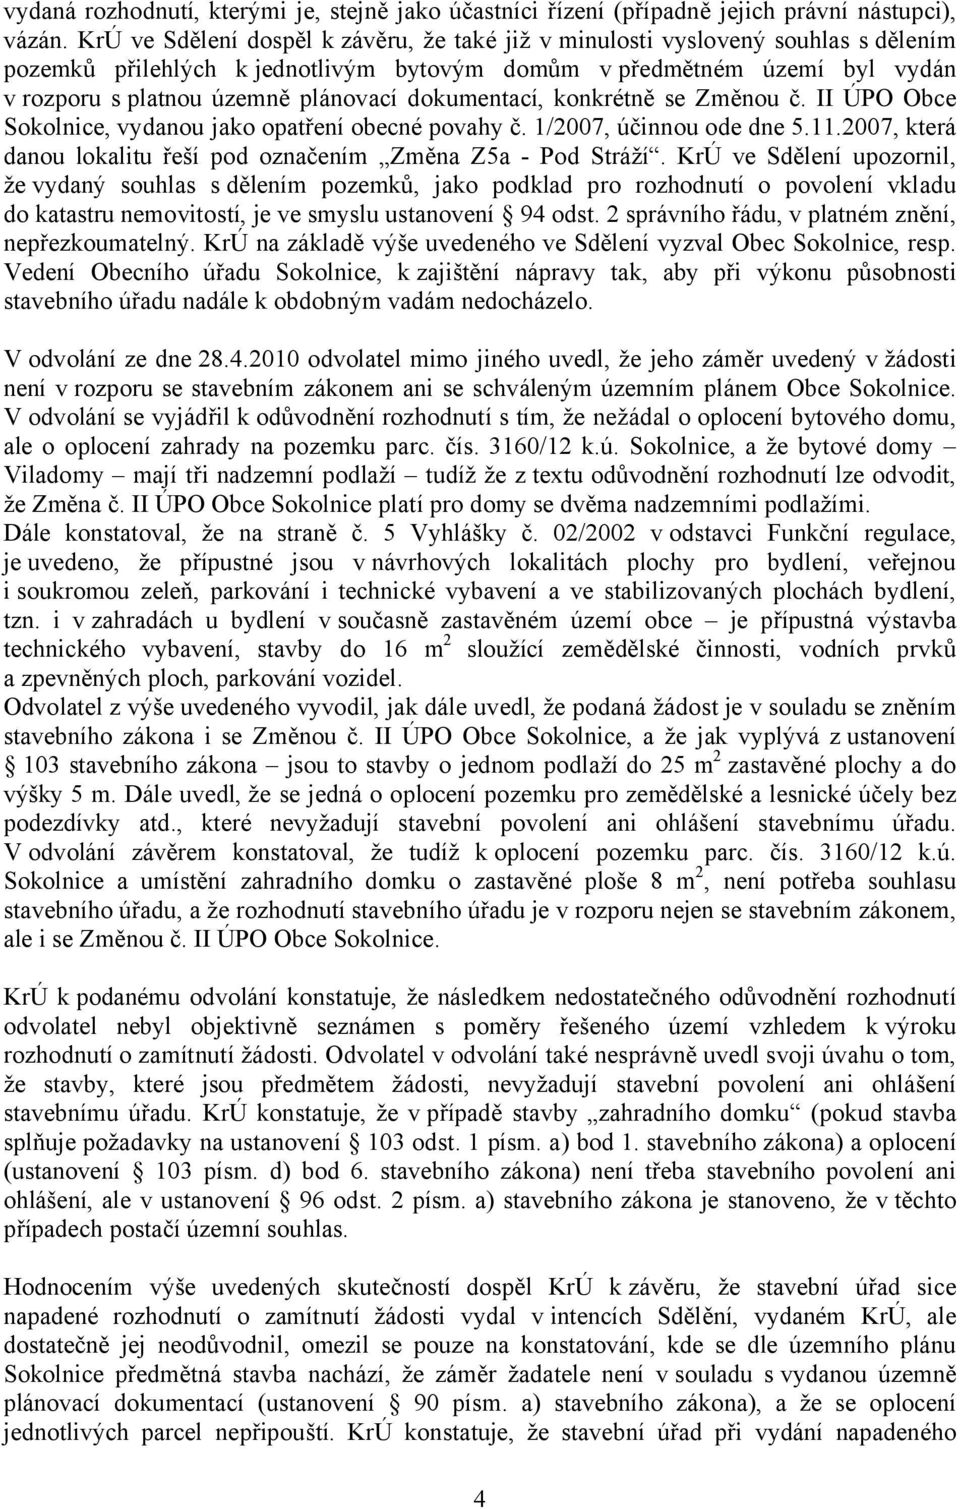 dokumentací, konkrétně se Změnou č. II ÚPO Obce Sokolnice, vydanou jako opatření obecné povahy č. 1/2007, účinnou ode dne 5.11.2007, která danou lokalitu řeší pod označením Změna Z5a - Pod Stráží.